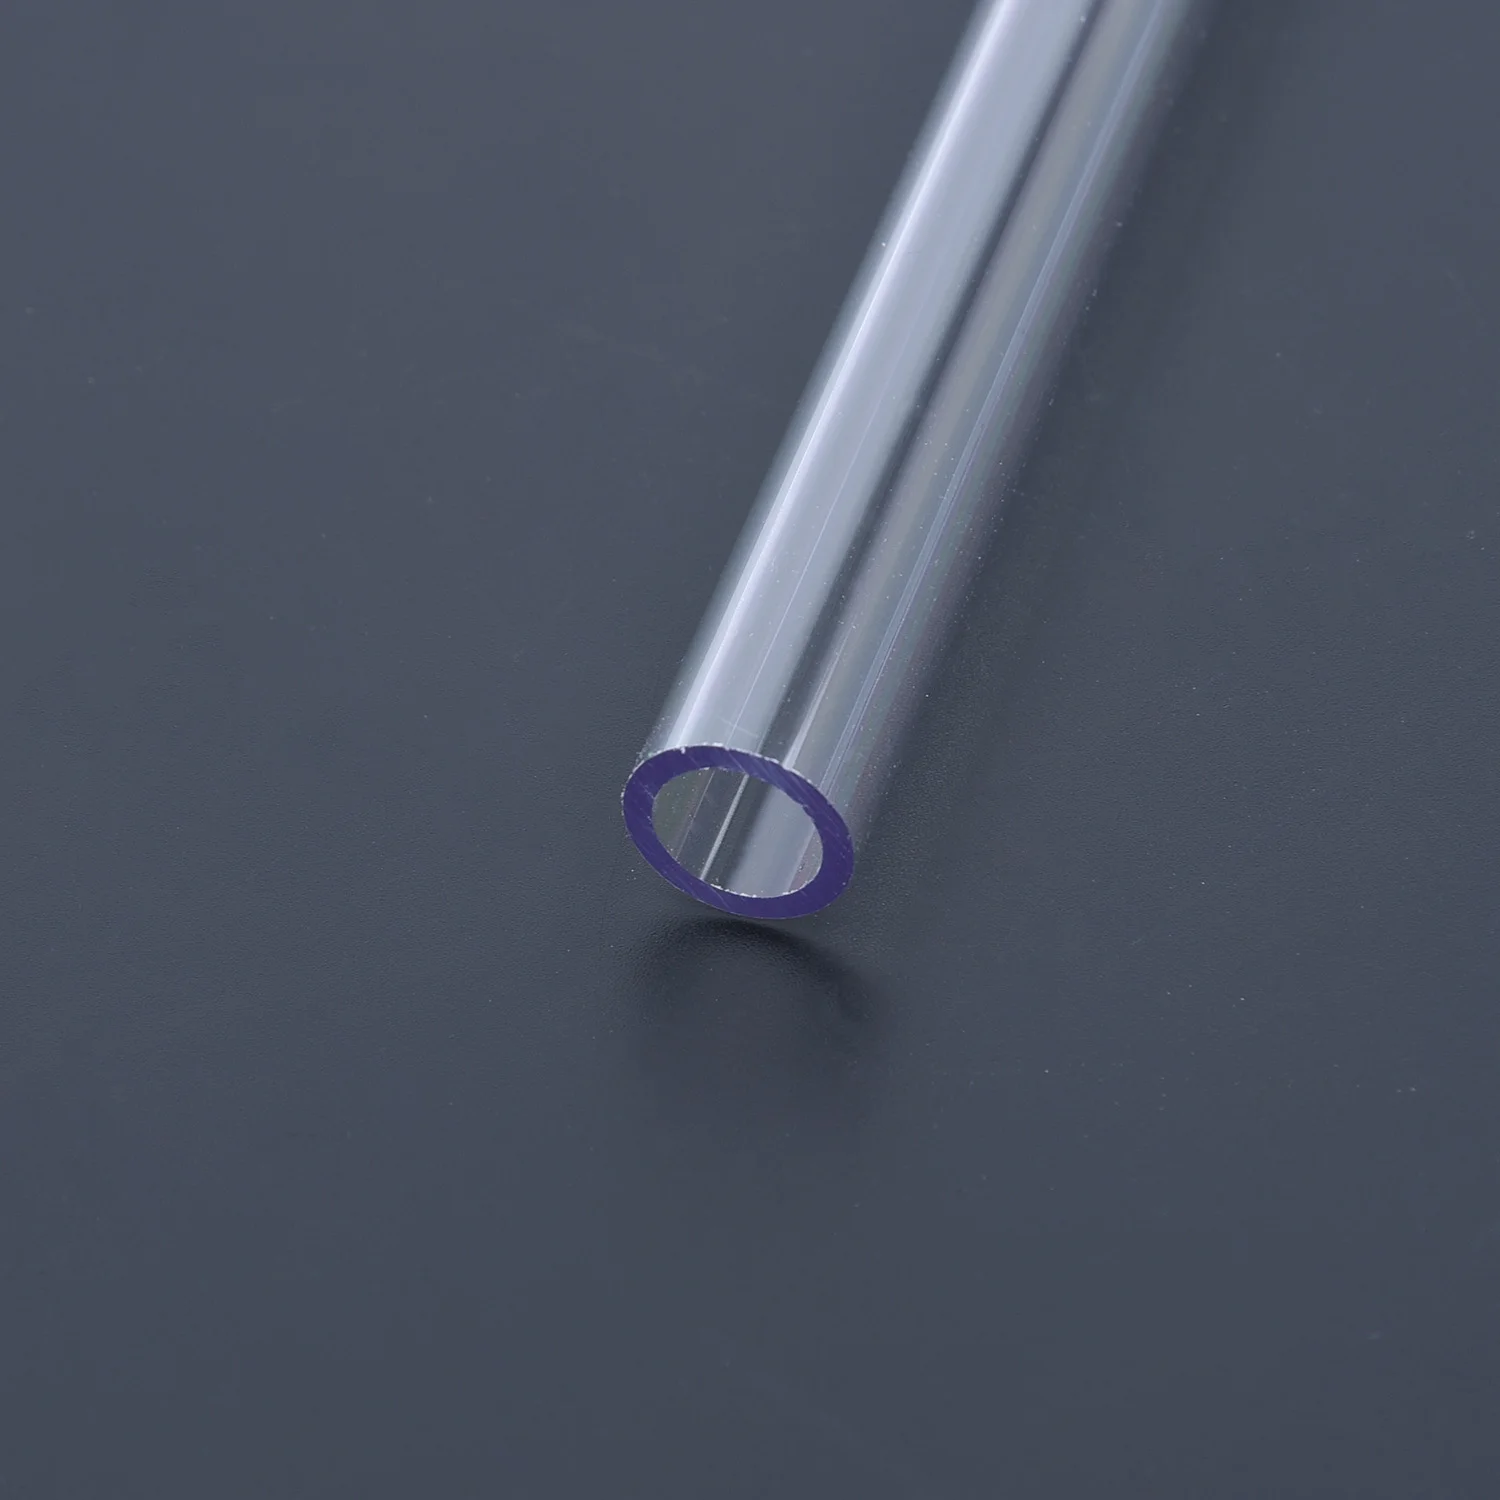 4 шт. 50 см прозрачная трубка PETG неподвижно закрепленная жесткая трубка 10 мм/14 мм прозрачные изгибающие жесткие трубы шланг для компьютера